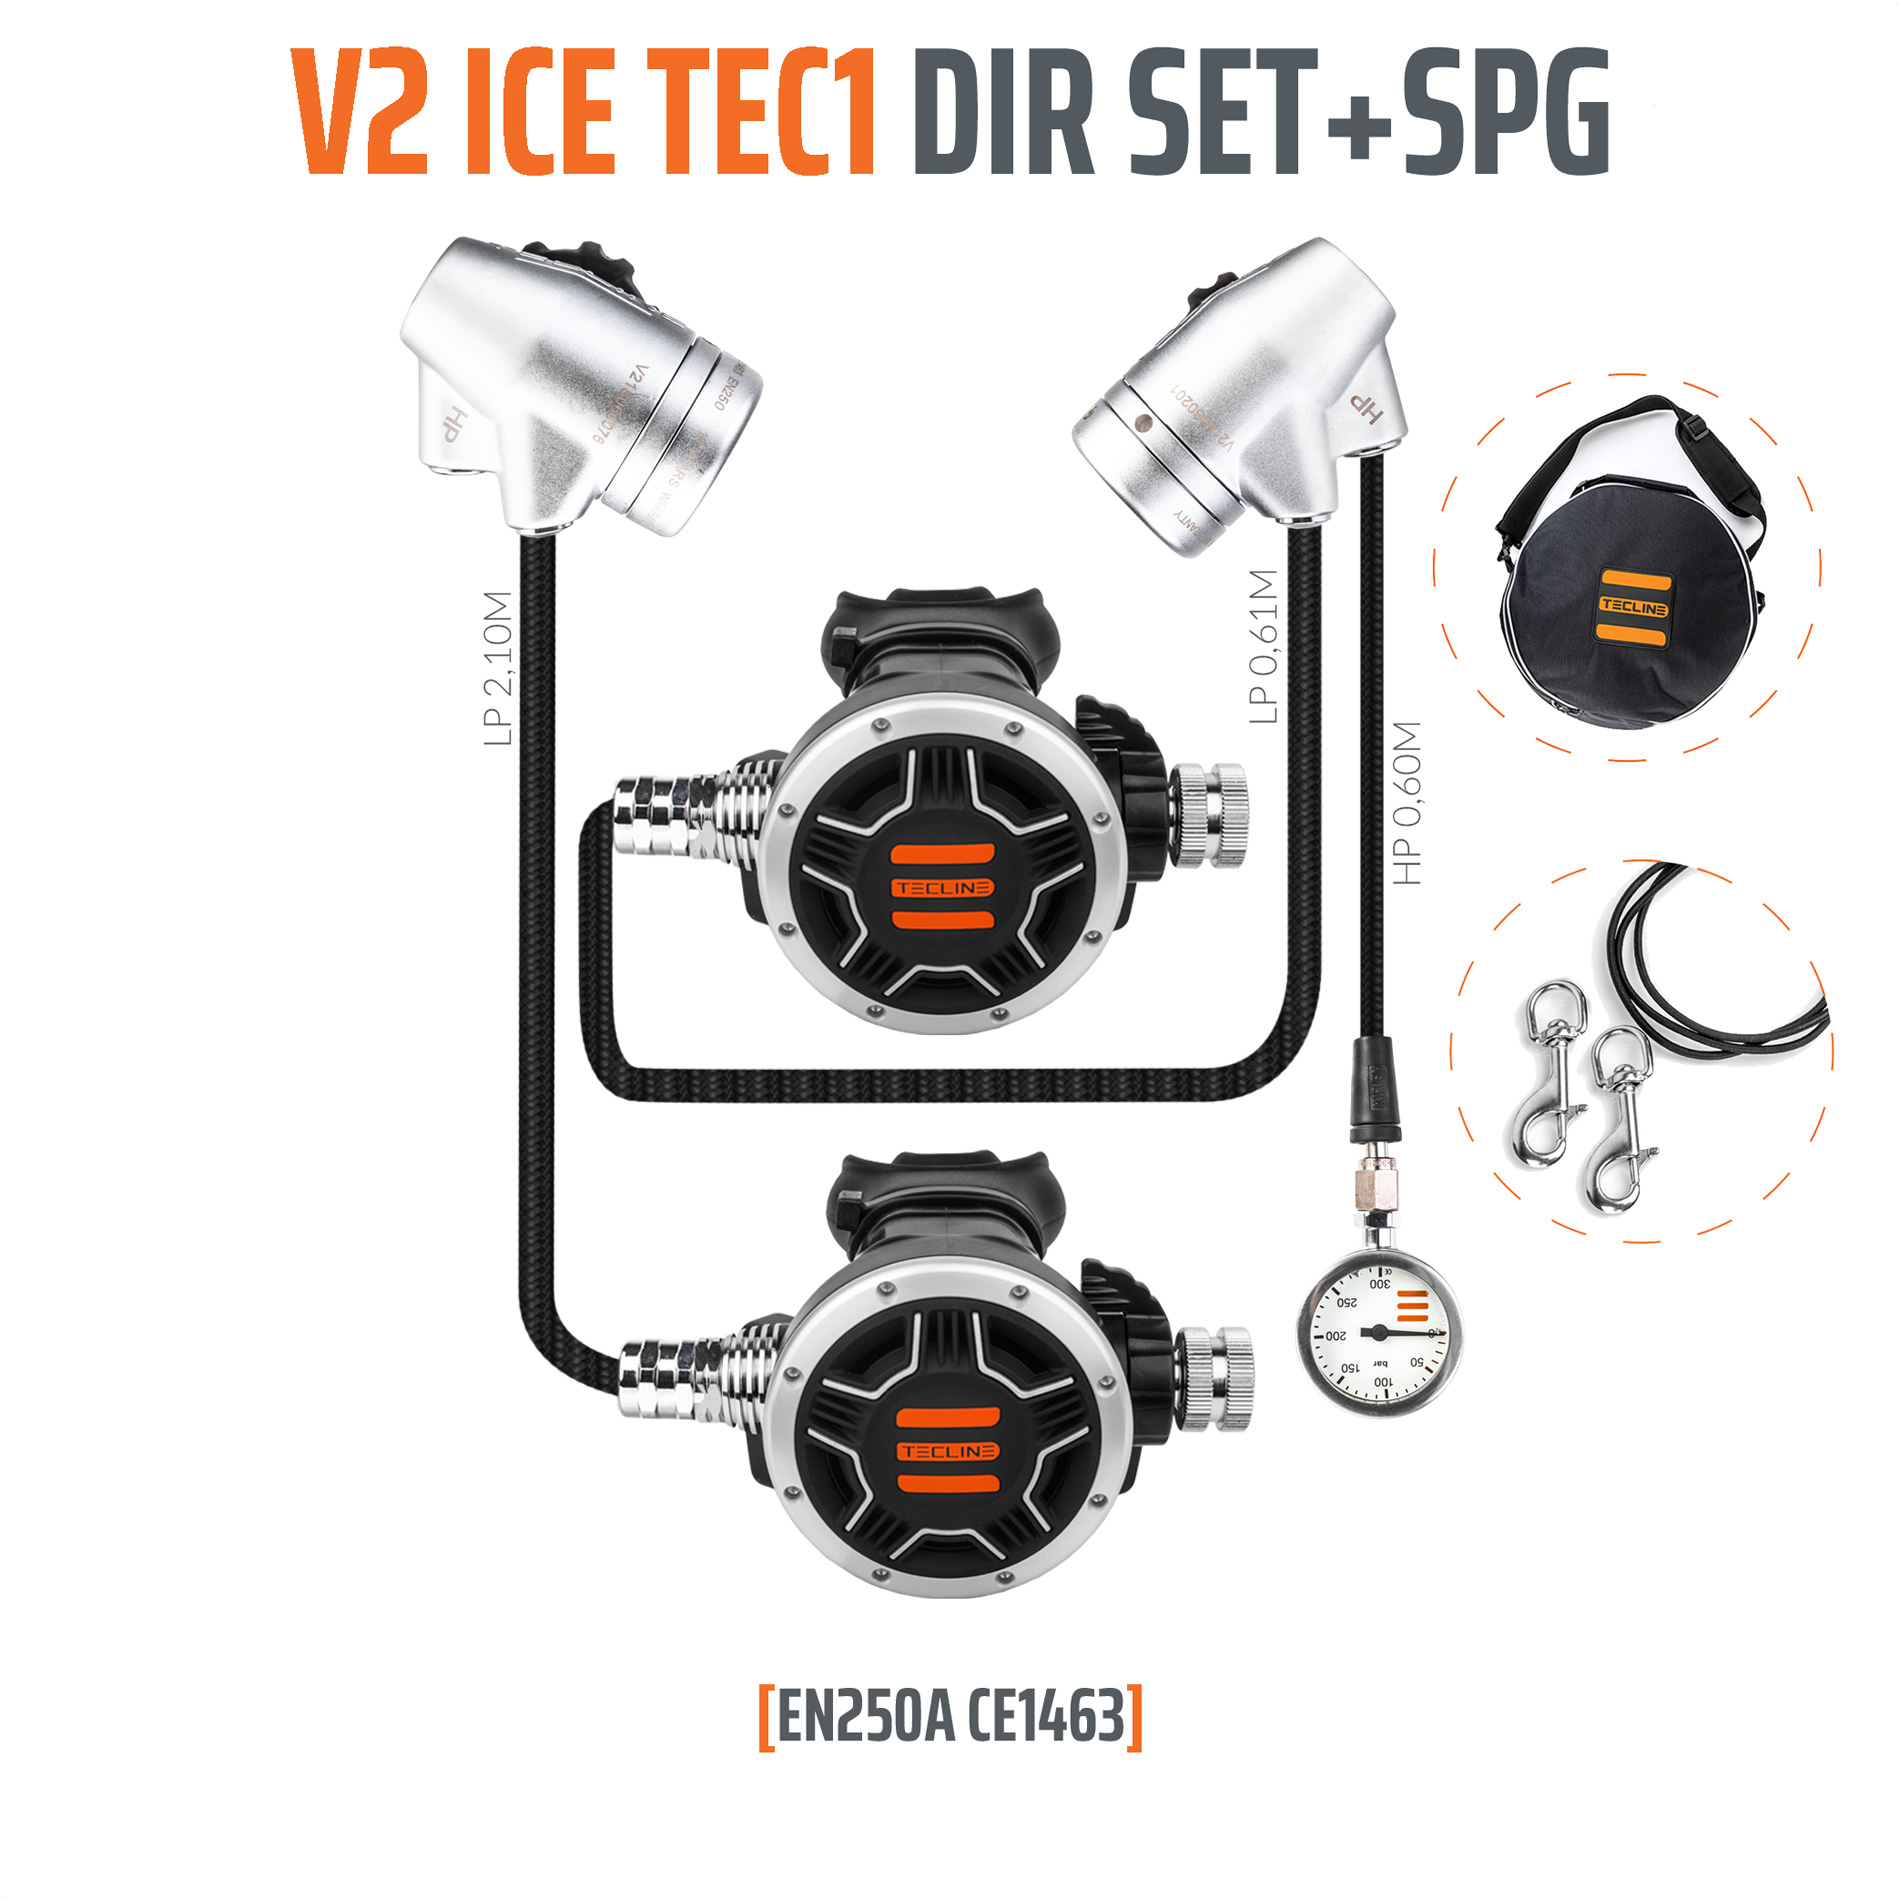 Tecline Regulator V2 ICE TEC1 DIR Set with SPG – EN250V